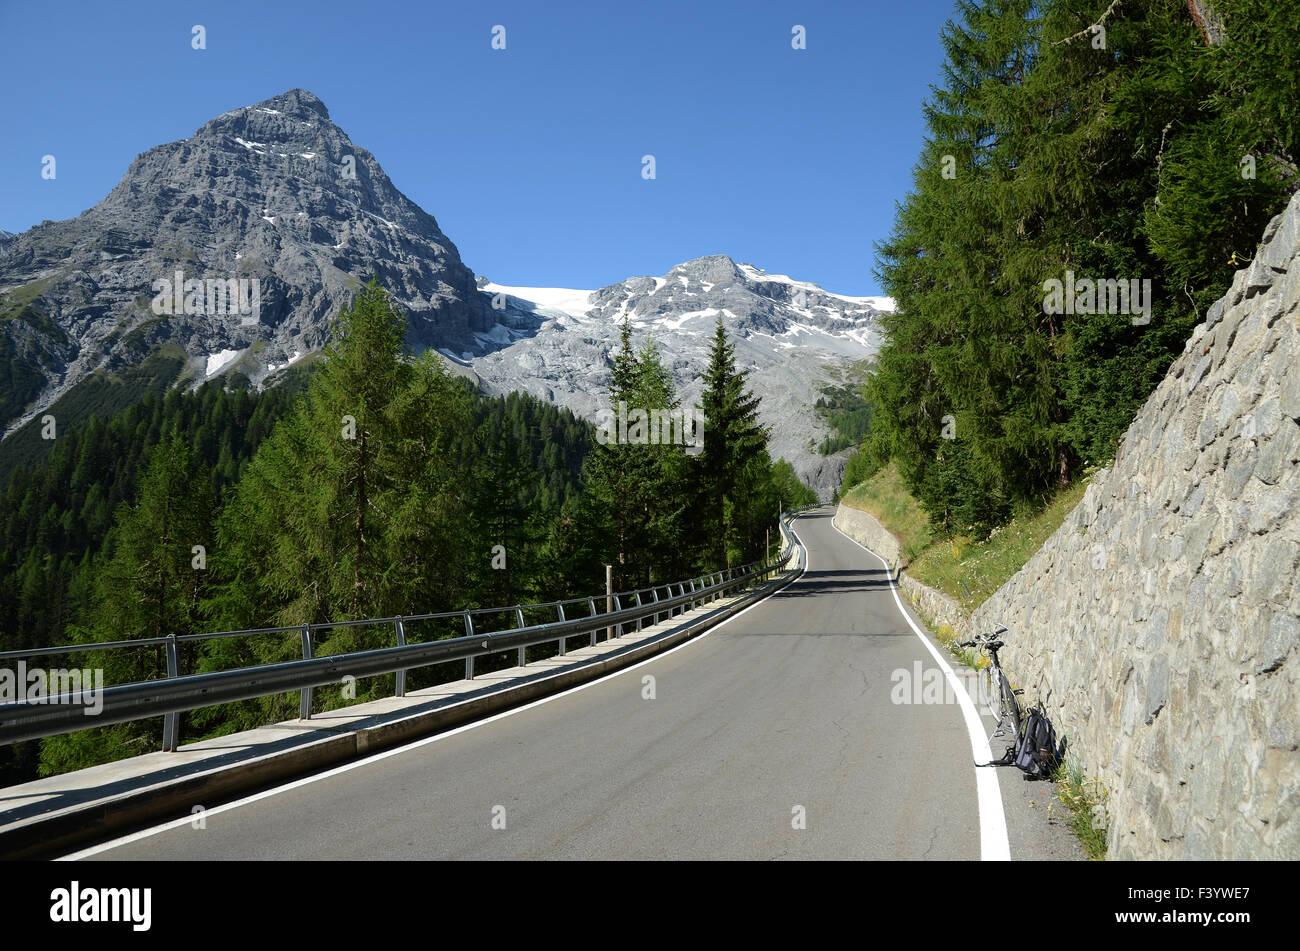 alpine pass stilfser joch Stock Photo